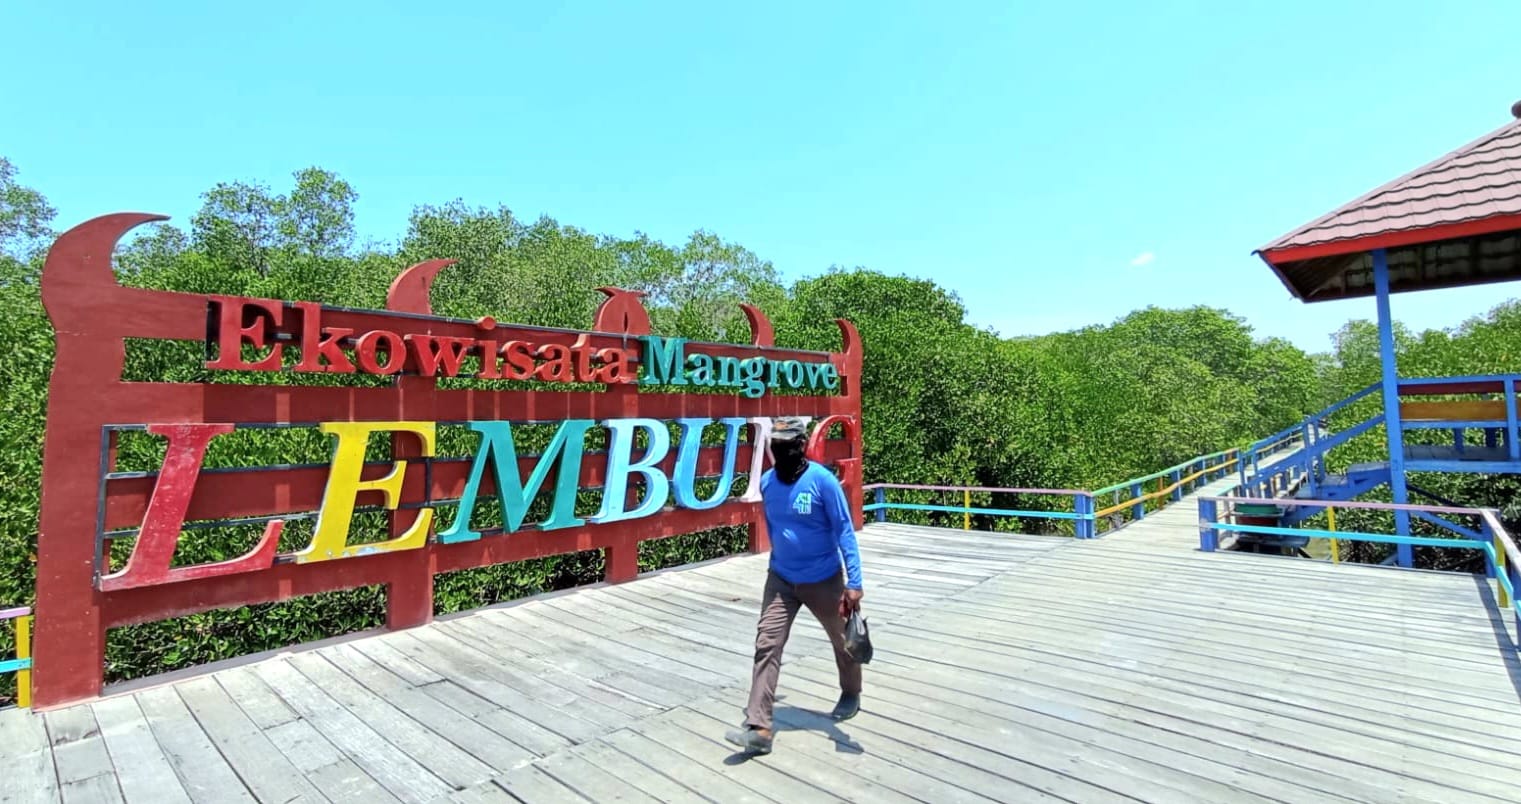 Ekowisata Mangrove Pamekasan